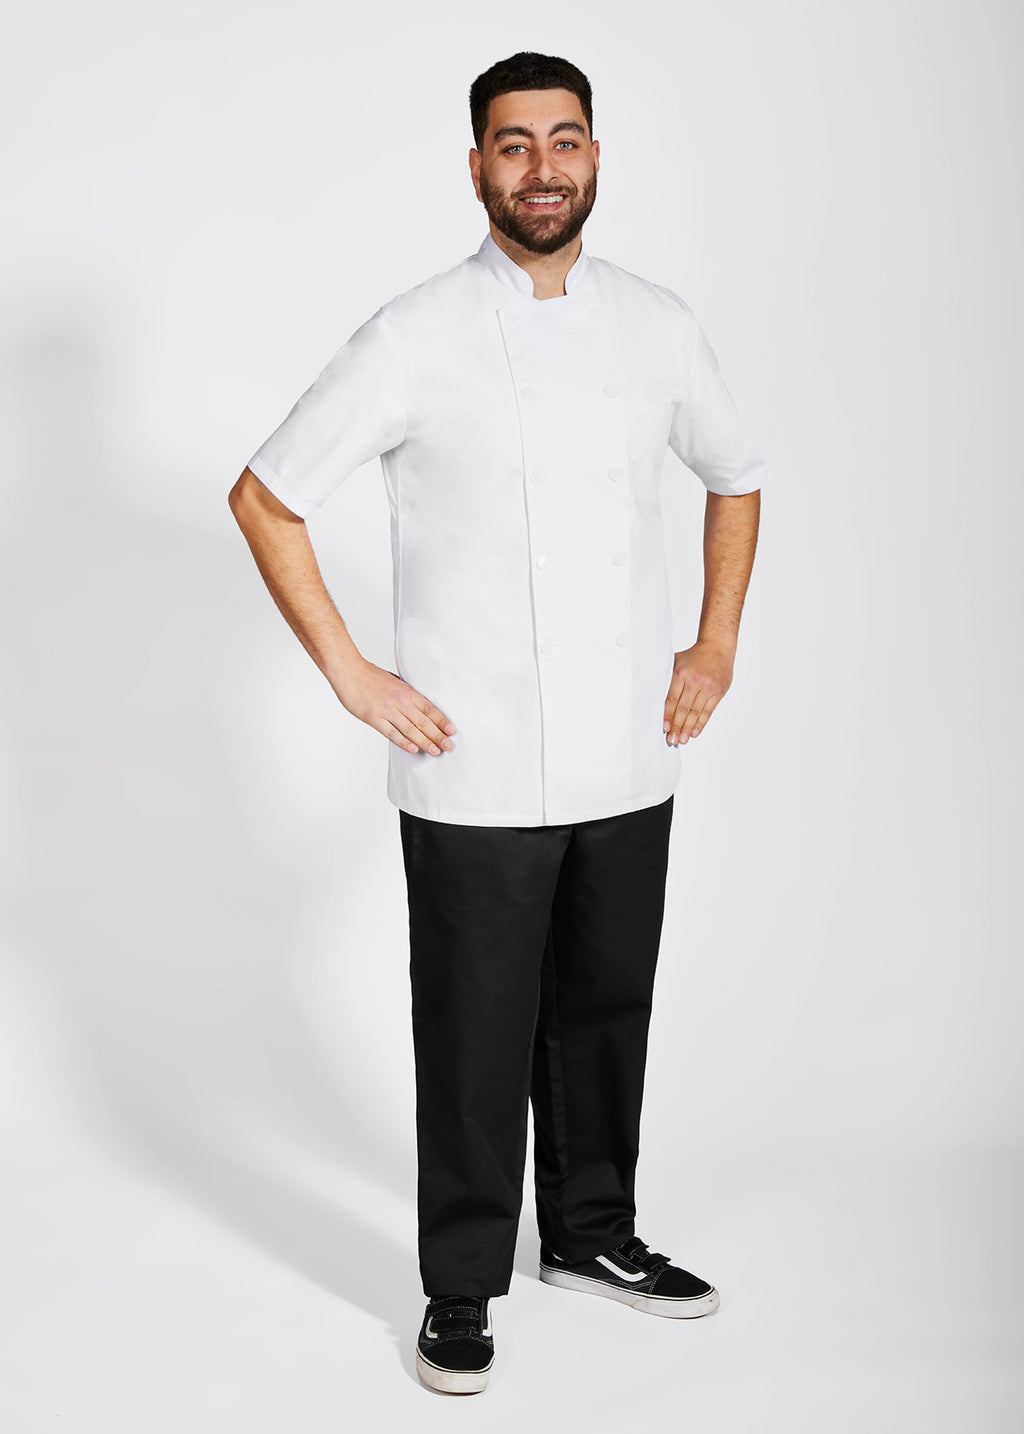 Product - Unisex Short Sleeve MOBB Chef Coat